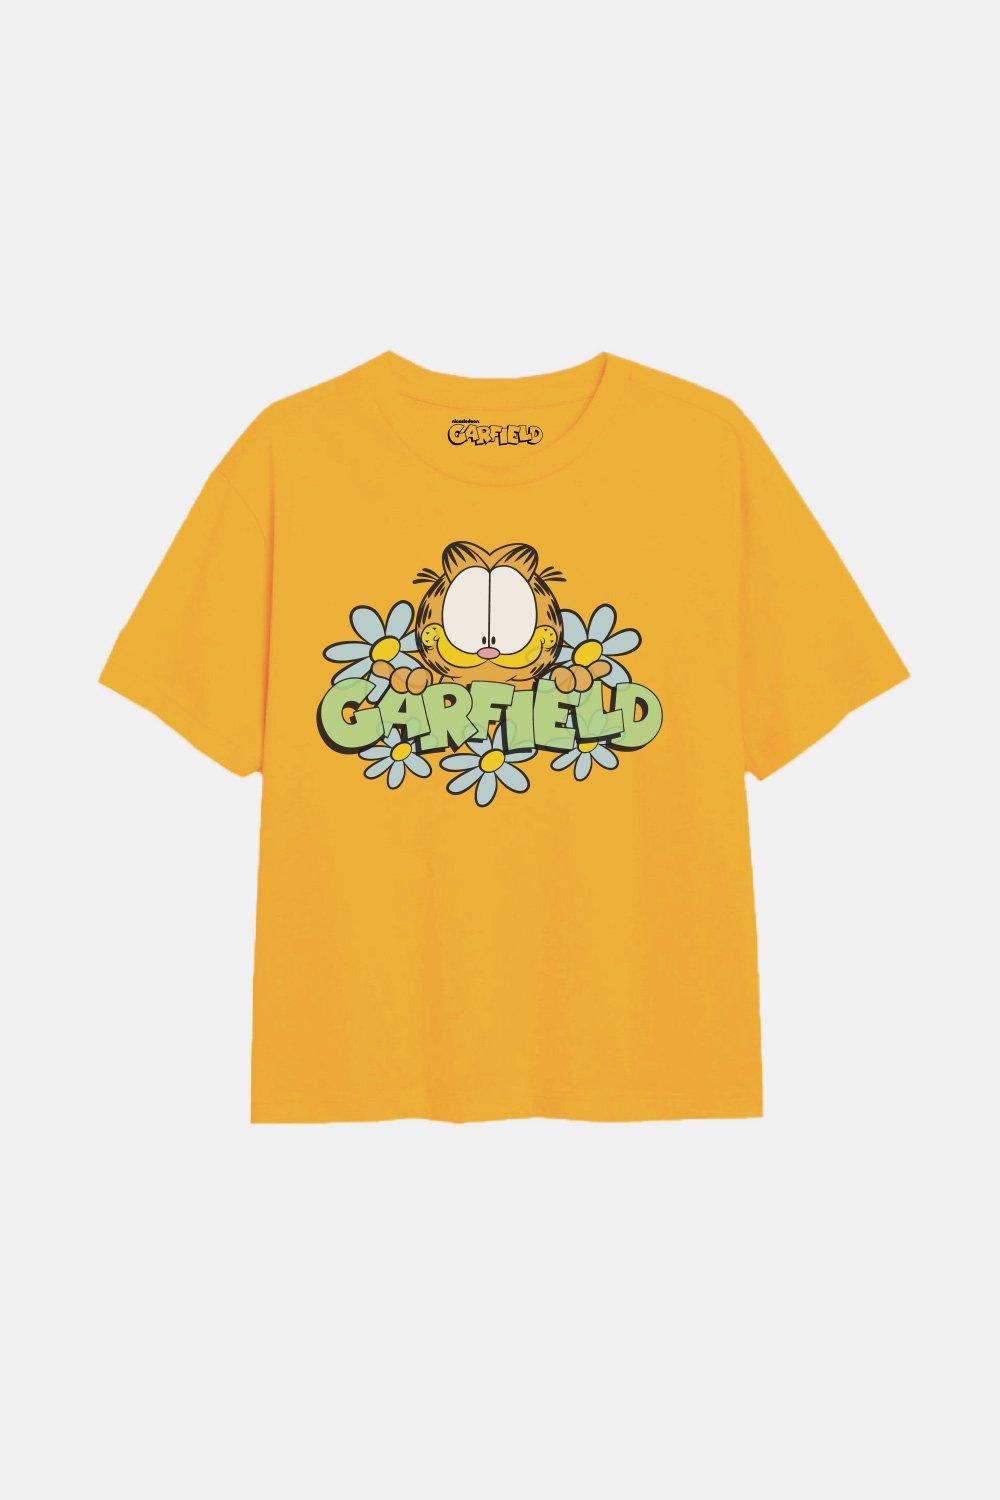 Футболка для девочек Flower Power Garfield, желтый мои раскраски веселый кот гарфилд